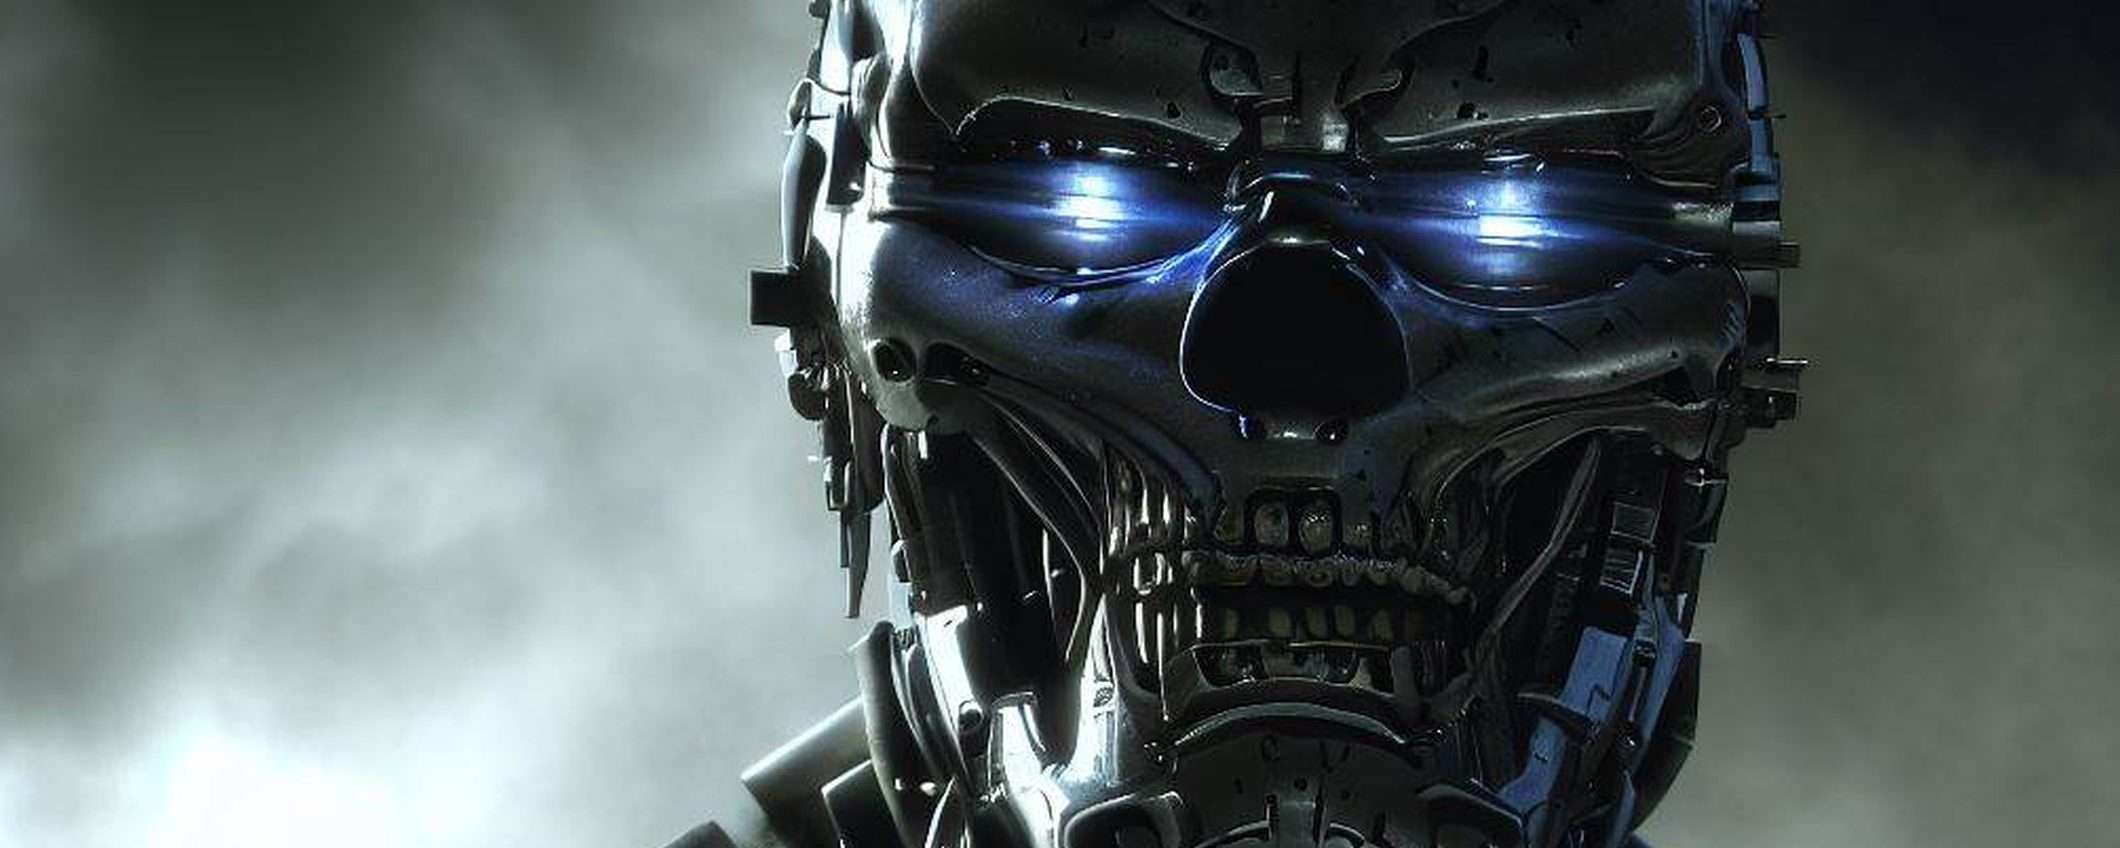 Geoffrey Hinton: l'IA è un pericolo per l'umanità